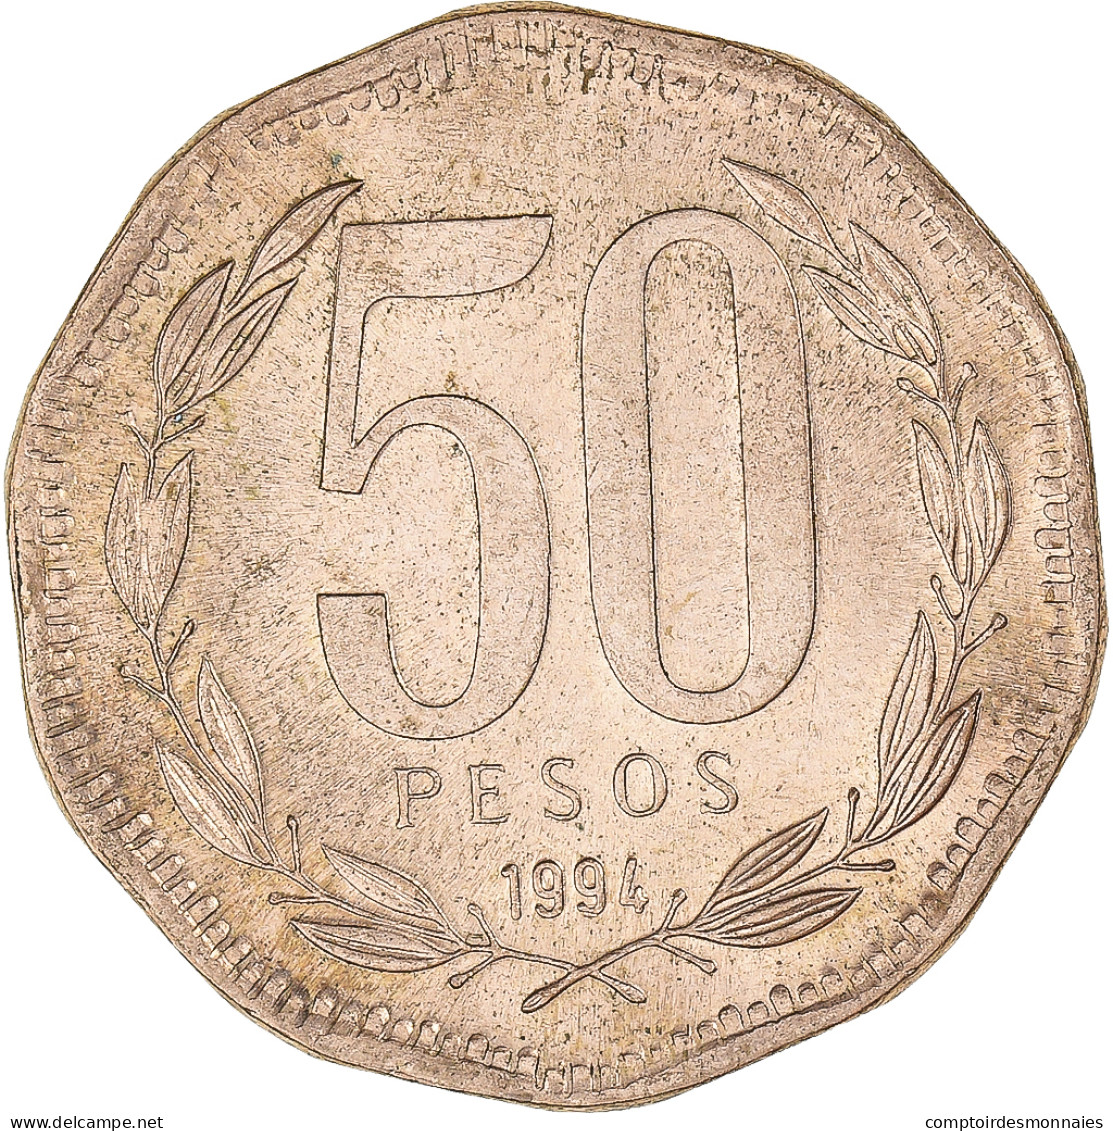 Monnaie, Chili, 50 Pesos, 1994 - Chile